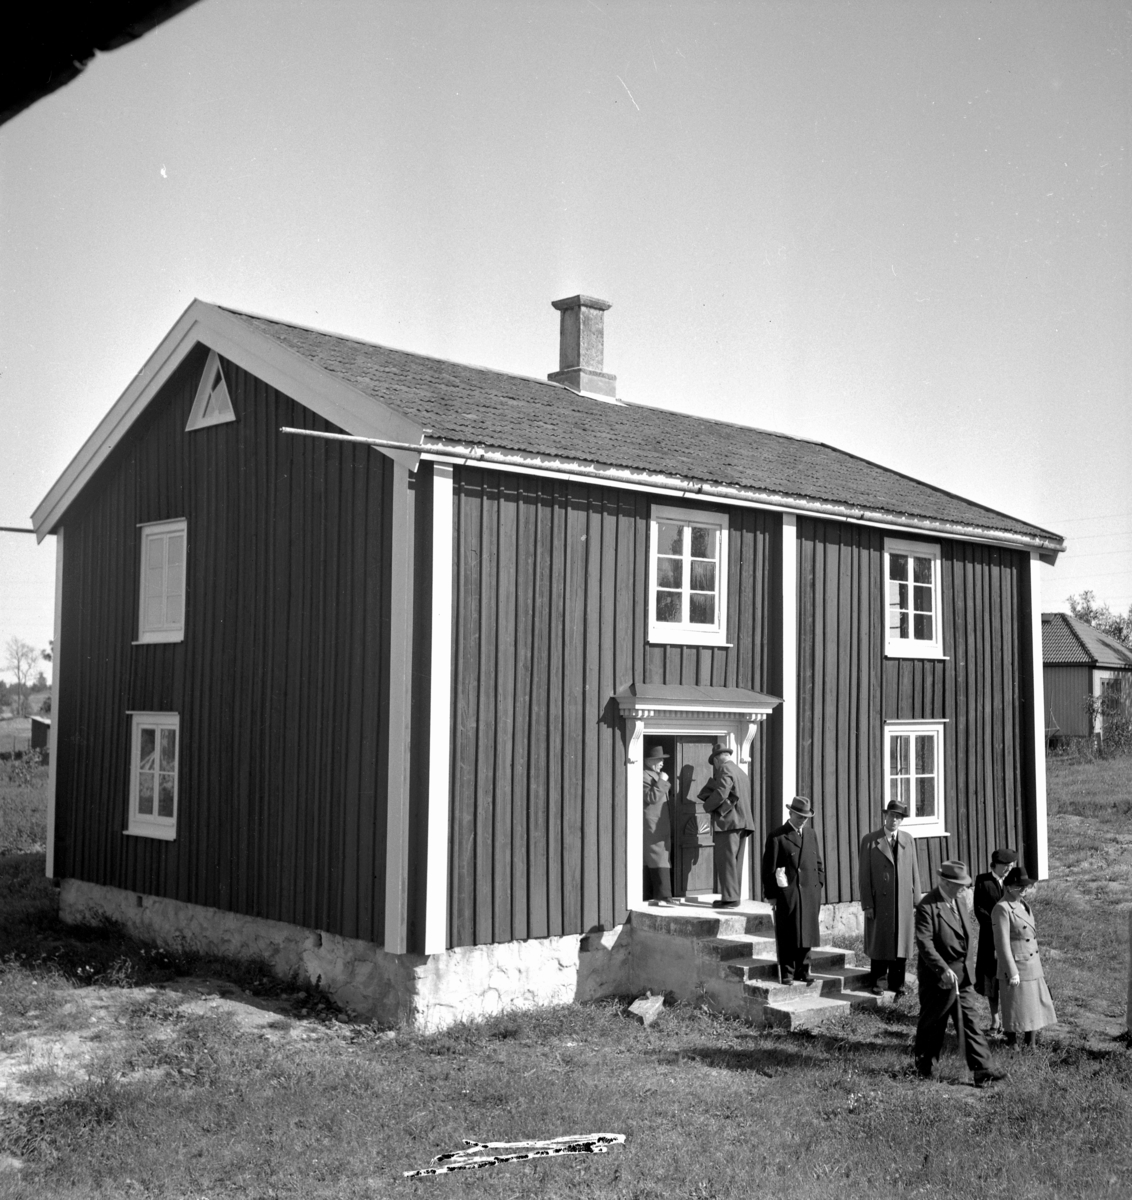 Högans hembygdsgård utanför Fjugesta. Grupp framför huset.

13 september 1942.